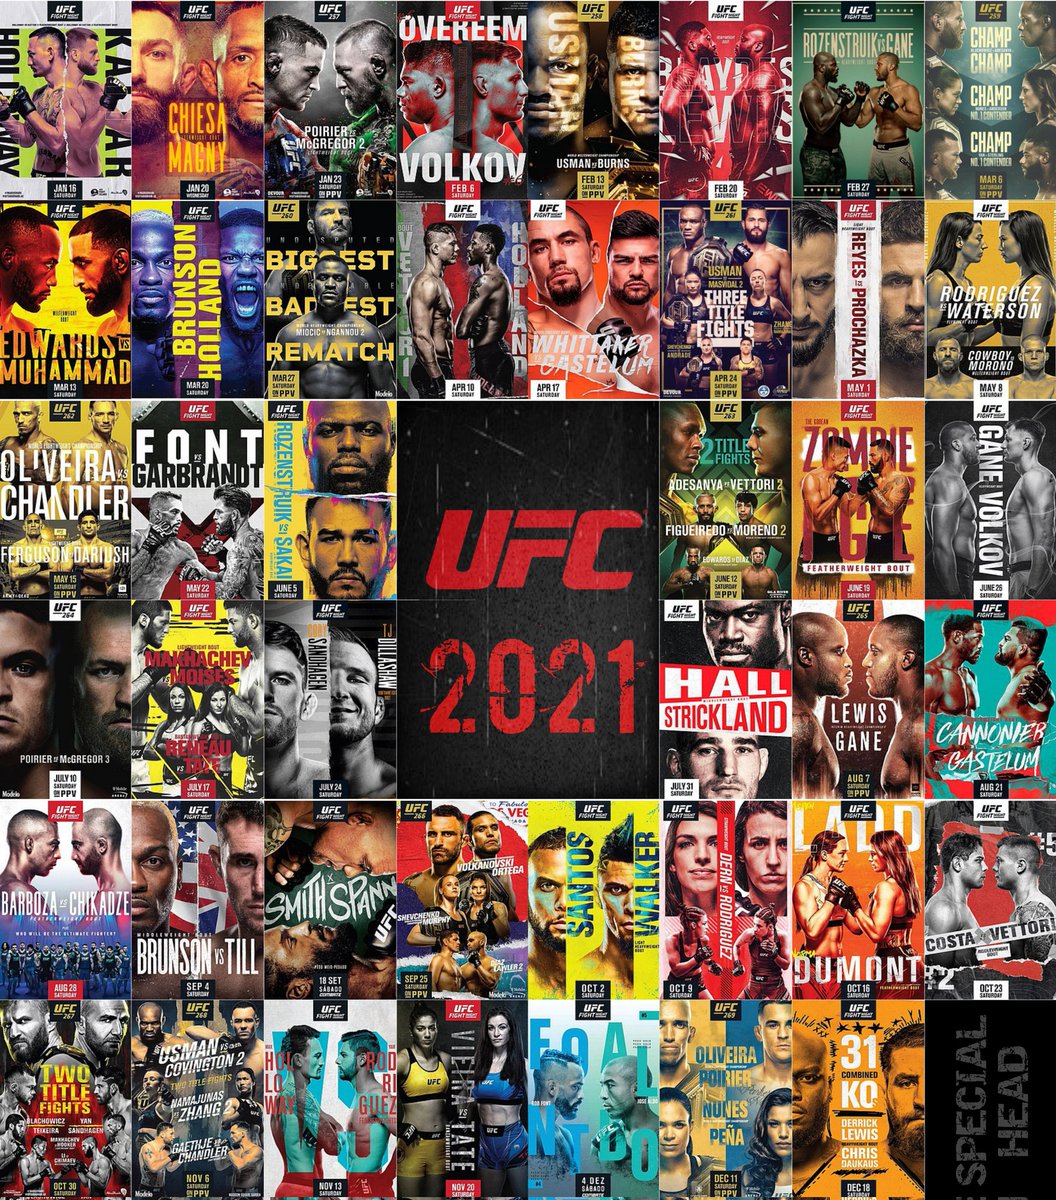 Every official UFC event poster from 2023, 2022 & 2021 🔥
#UFCLondon #UFCAustin #UFCSingapore #UFCVegas #UFC300